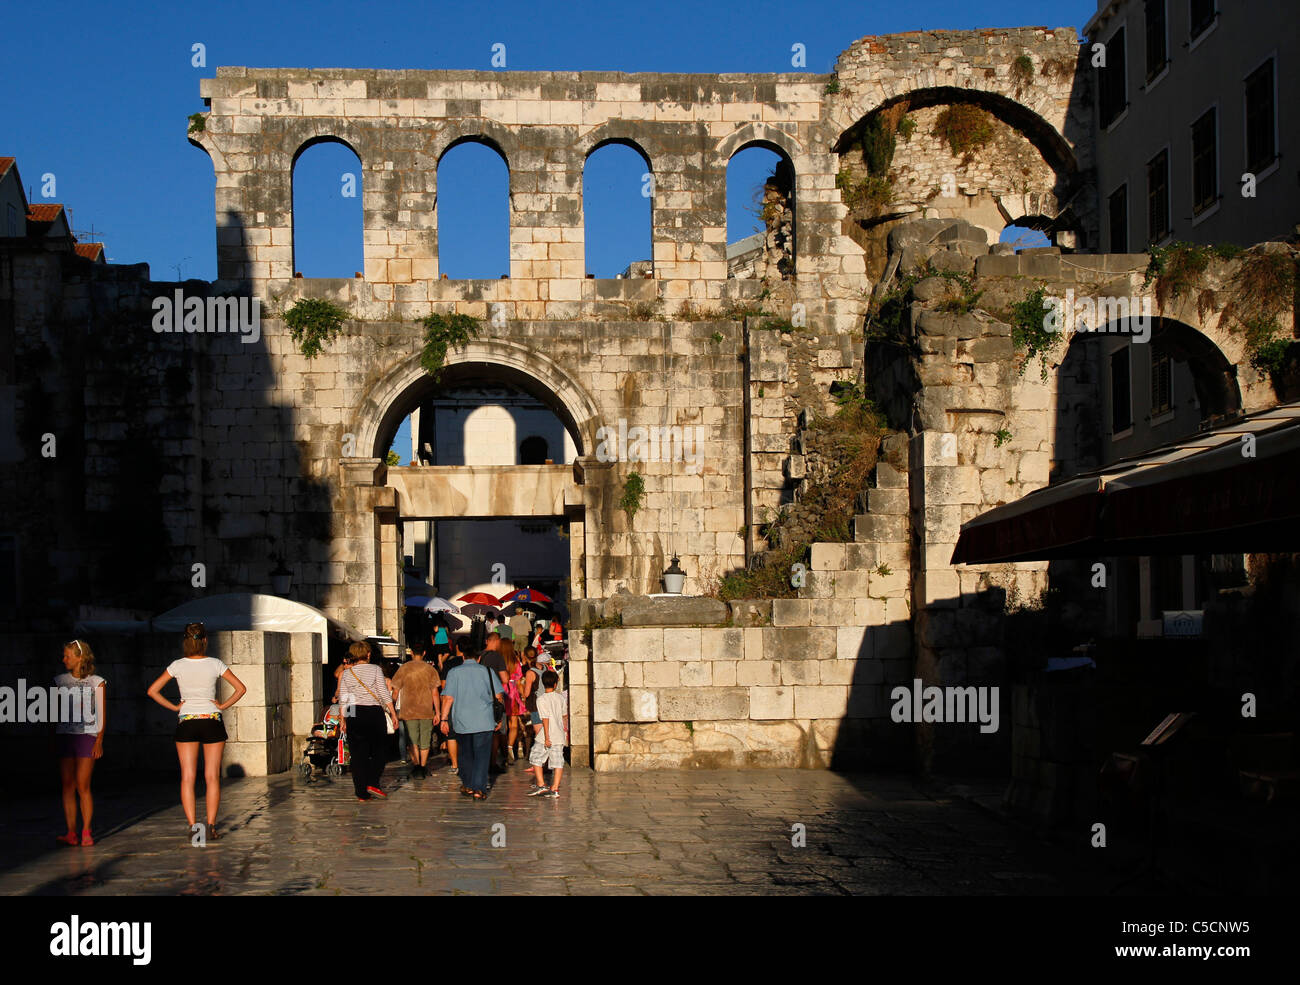 L'argent (est) gate - Porta argentea - le palais de Dioclétien, Split, Croatie Banque D'Images